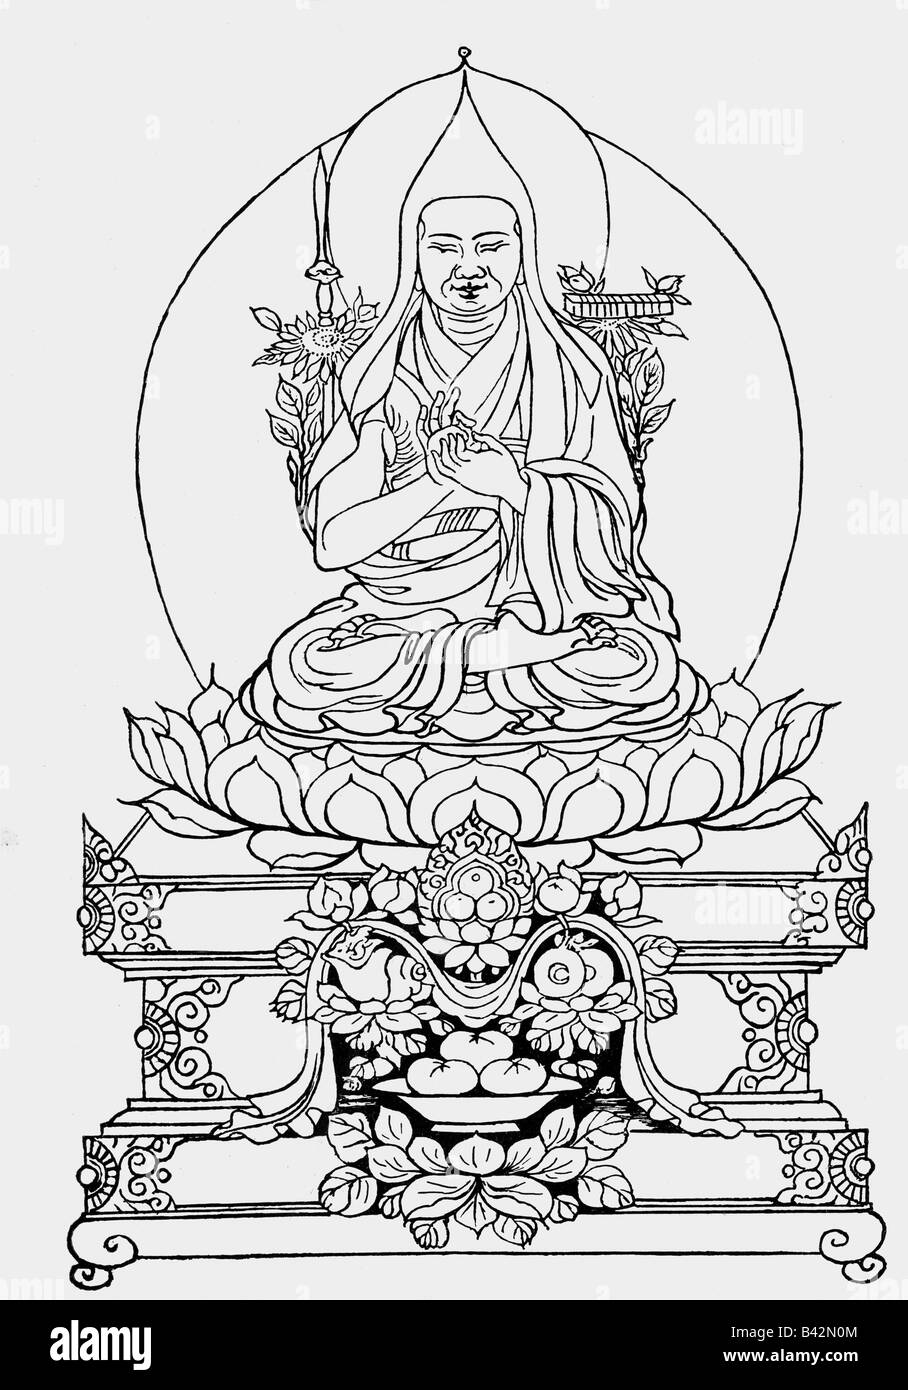 Buddha, Principe Siddharta Gautama, 563 a.C. - 483 a.C., fondatore indiano di una religione, artigianato del Tibet, Foto Stock